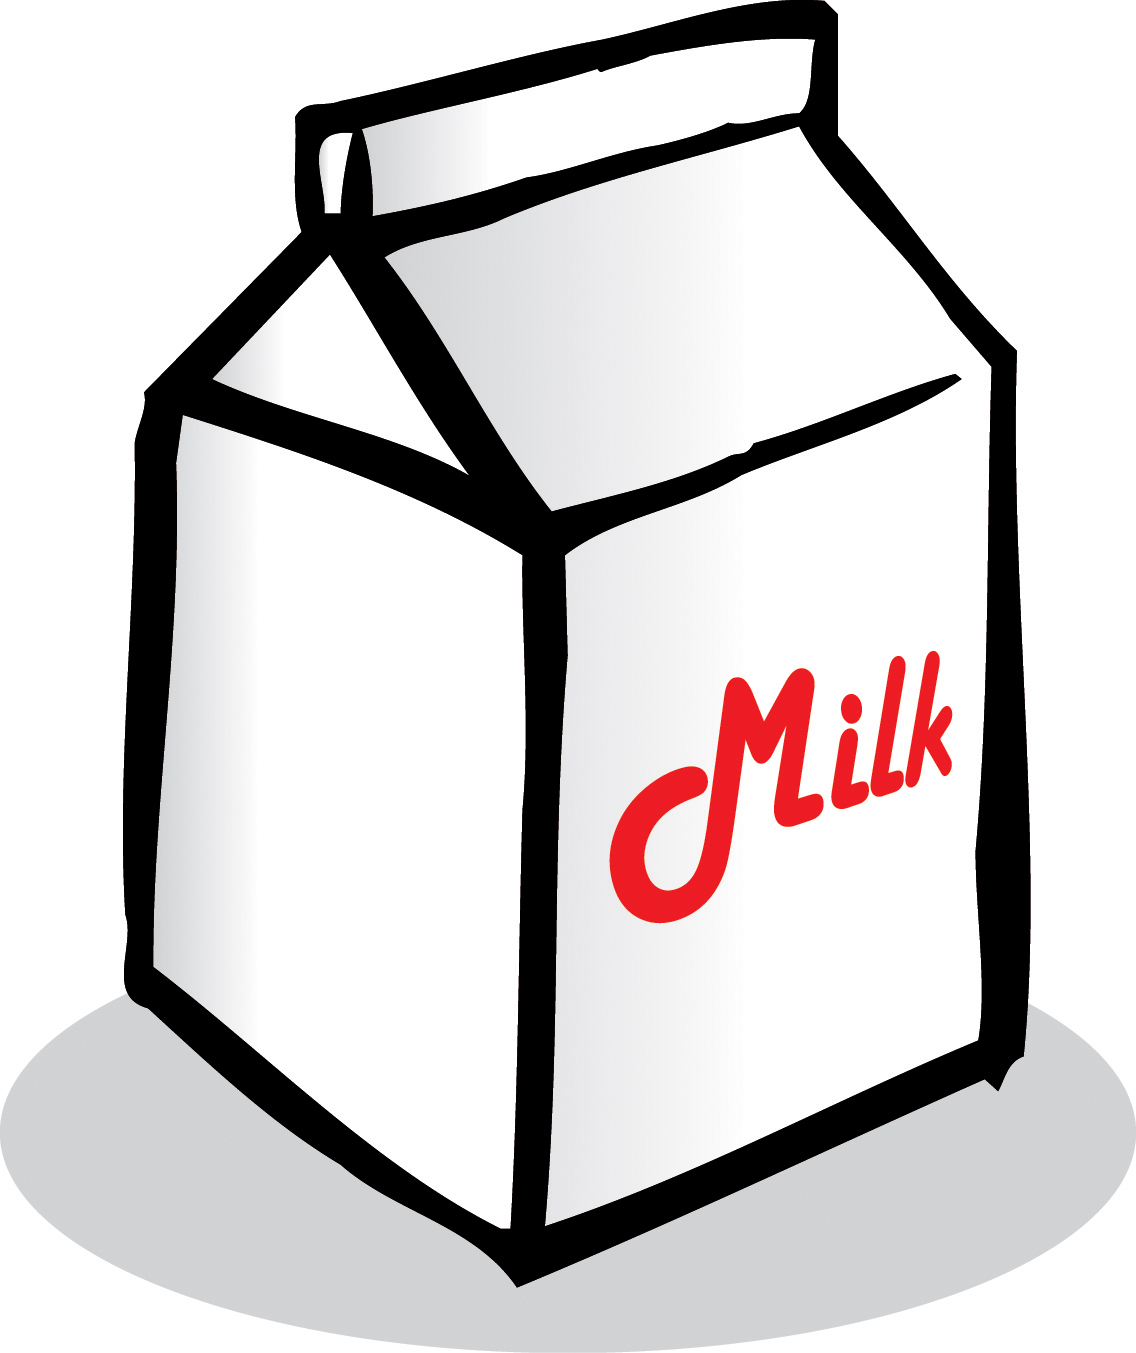 Draw Milk Box - ClipArt Best